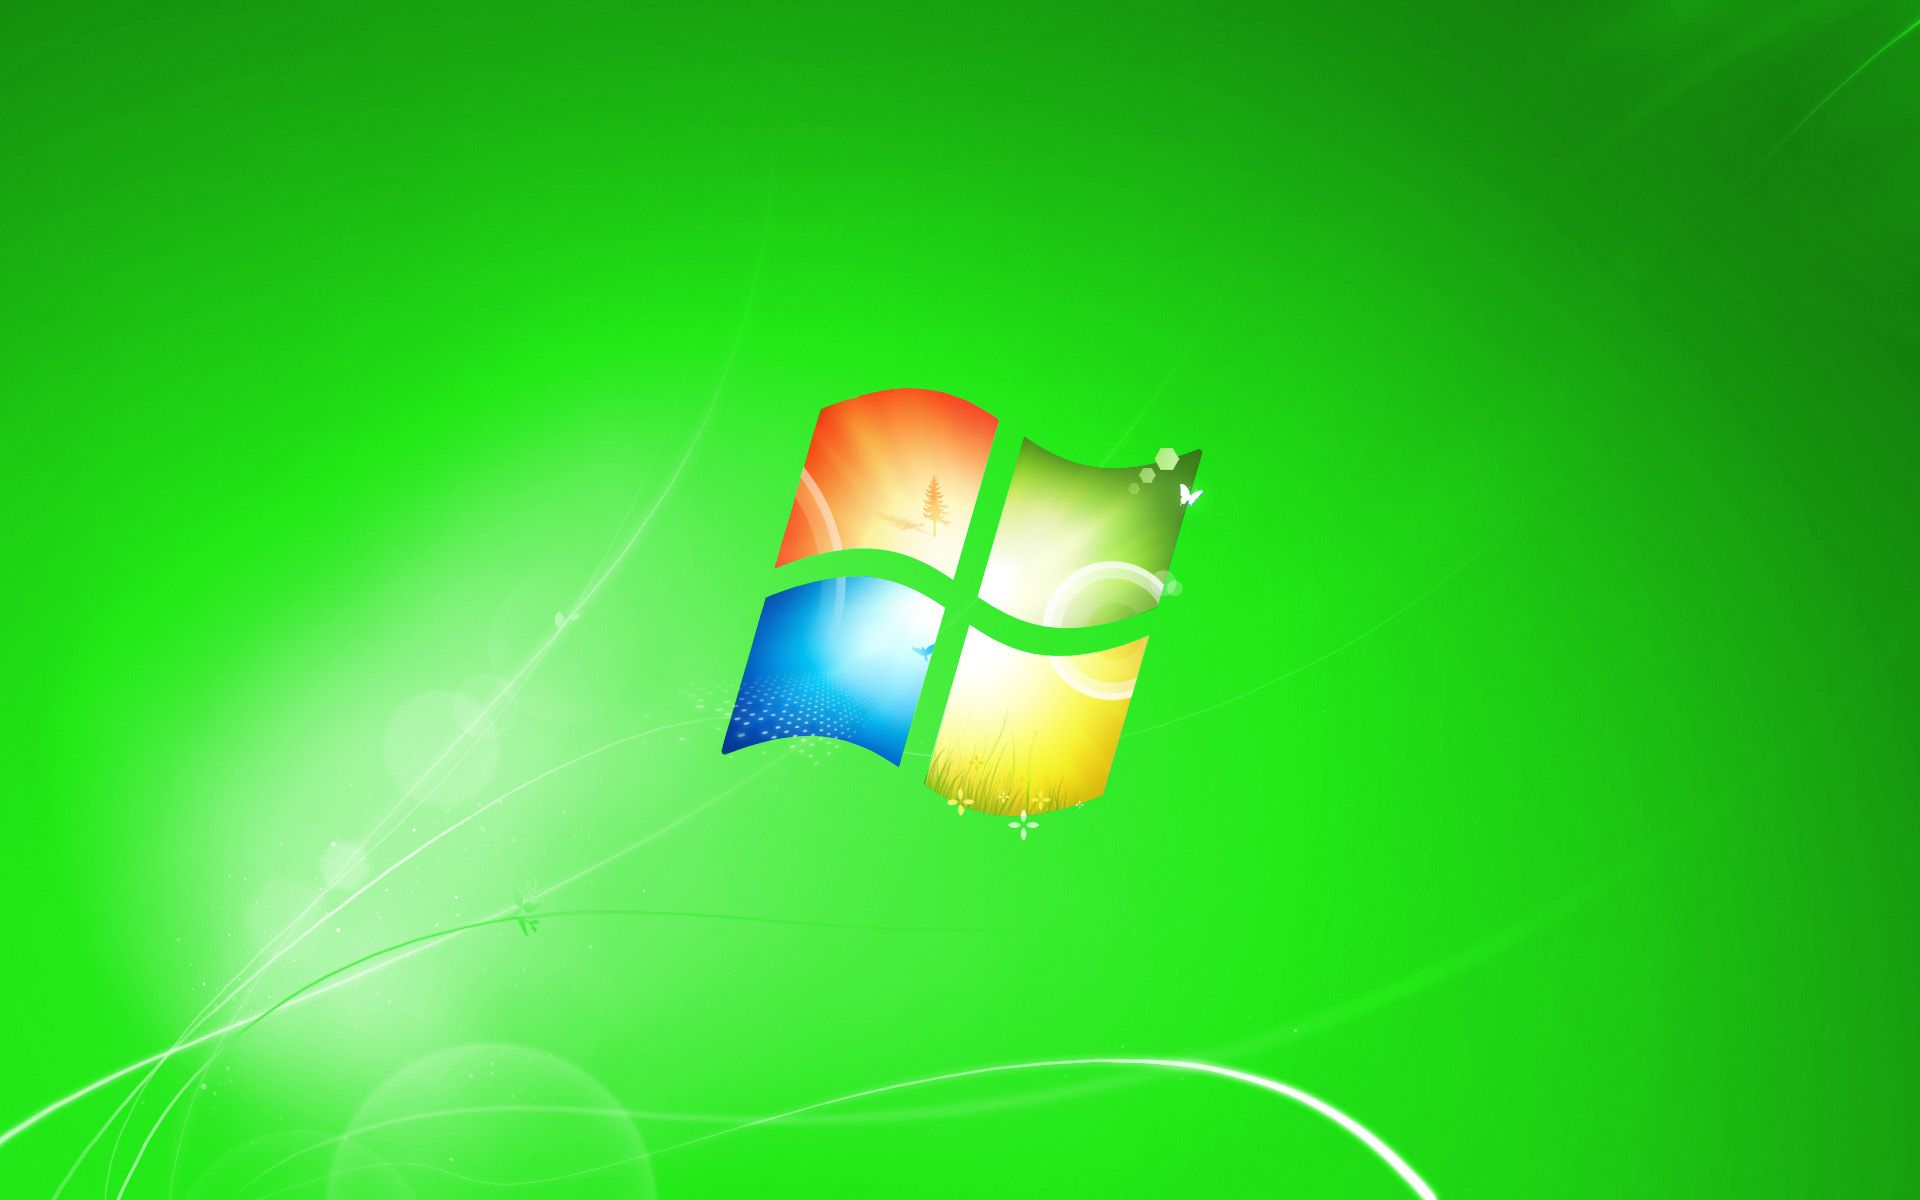 Windows 7 Default Wallpapers - Wallpaper Cave - Hình Nền Mặc Định Windows 7 Bạn là fan của hệ điều hành Windows 7? Hãy xem ngay bộ sưu tập hình nền mặc định Windows 7 này để khám phá những hình ảnh đẹp mắt và độc đáo của hệ điều hành này. Từ gam màu chủ đạo xanh đến những thiết kế geometry phong cách, bộ sưu tập này sẽ mang đến cho bạn những trải nghiệm tuyệt vời đầy thú vị. Hãy tải ngay và sử dụng làm hình nền cho máy tính của bạn nhé!